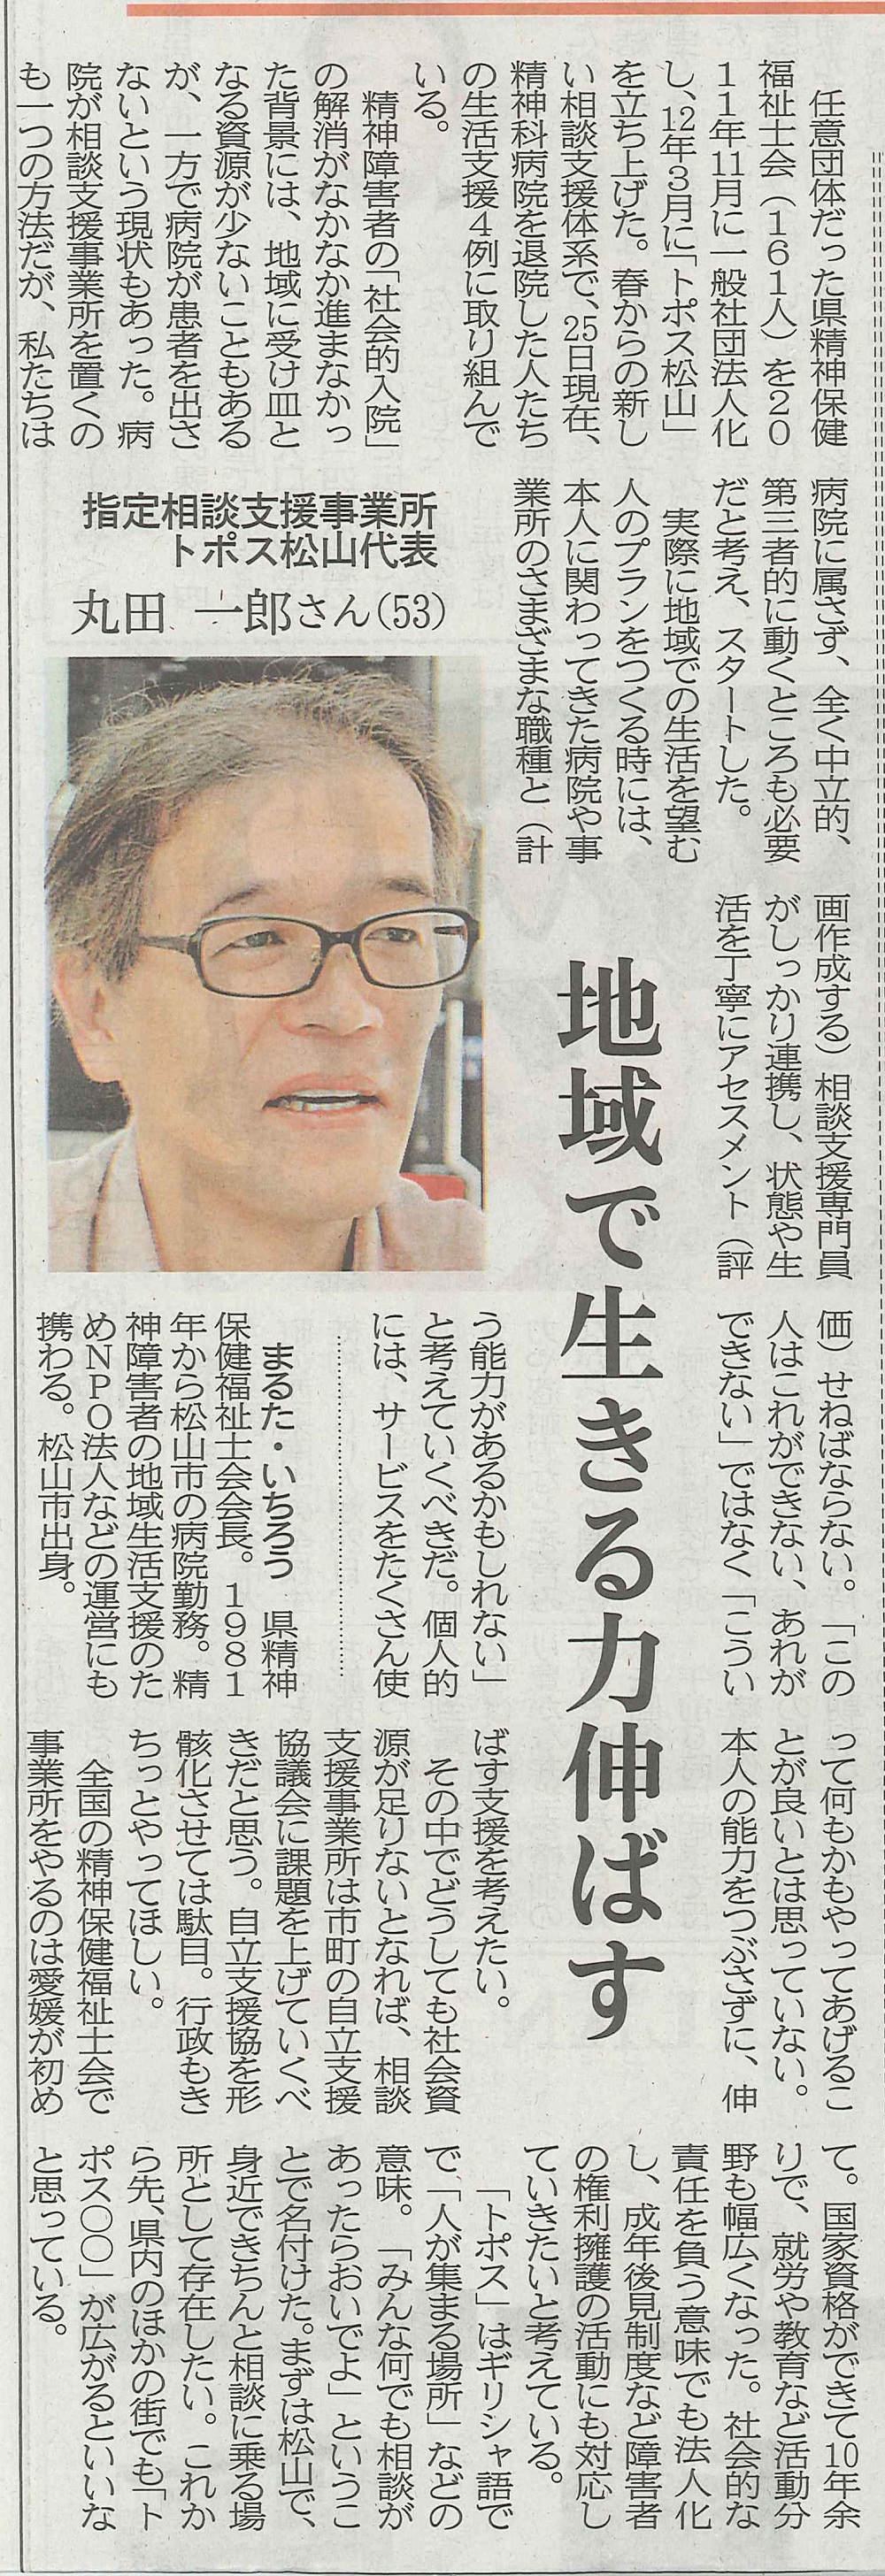 愛媛新聞2012年4月29日えひめニューウェブ丸田会長のインタビュー記事